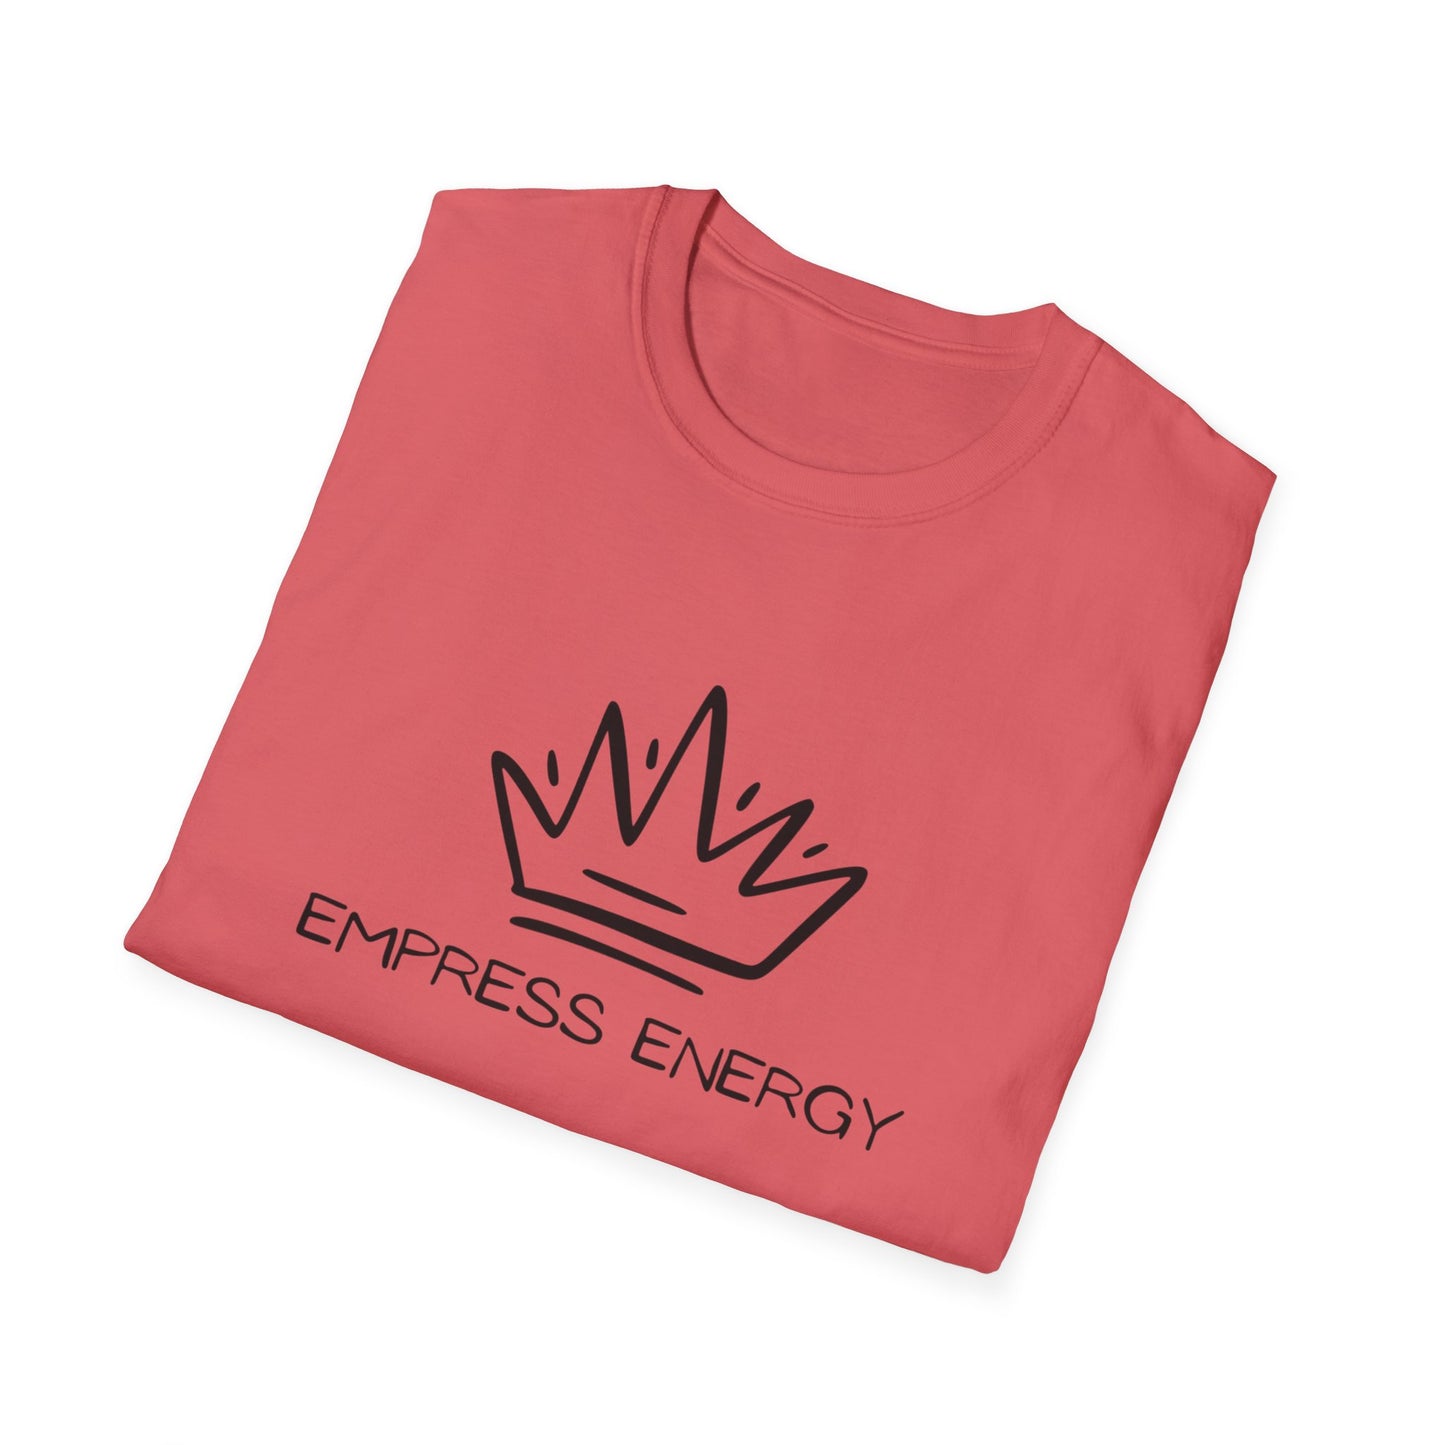 "Empress Energy" Unisex Softstyle T-Shirt